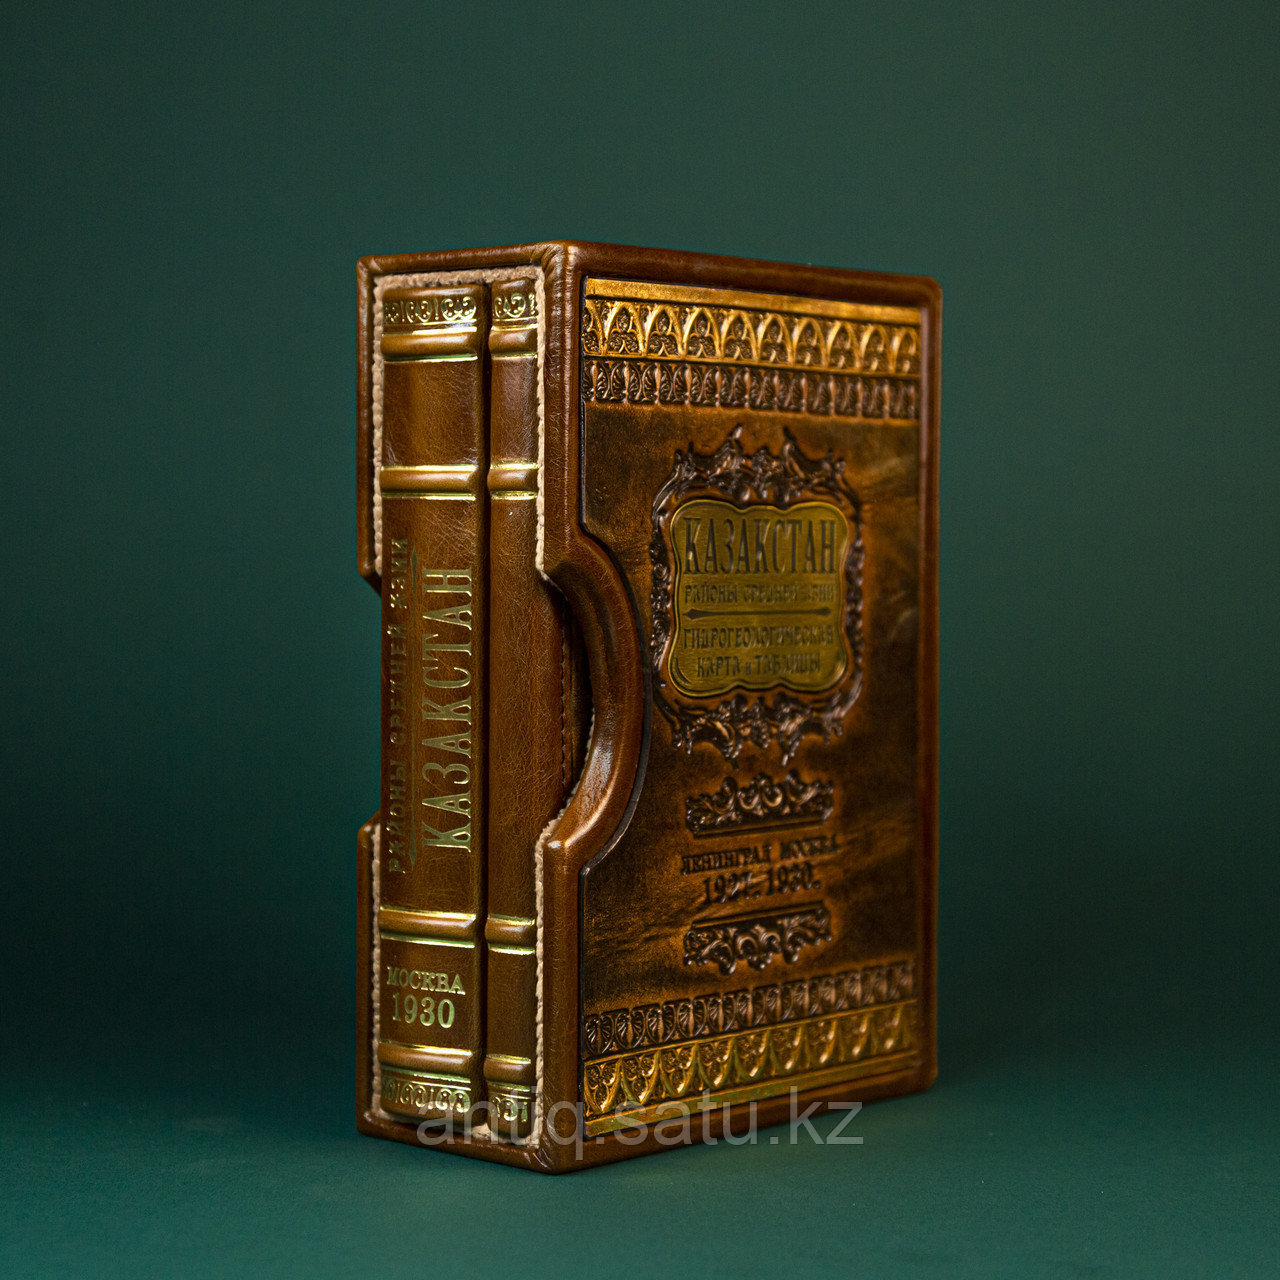 Антикварная книга, состоящая из двух редких трудов 1927 и 1930 годов